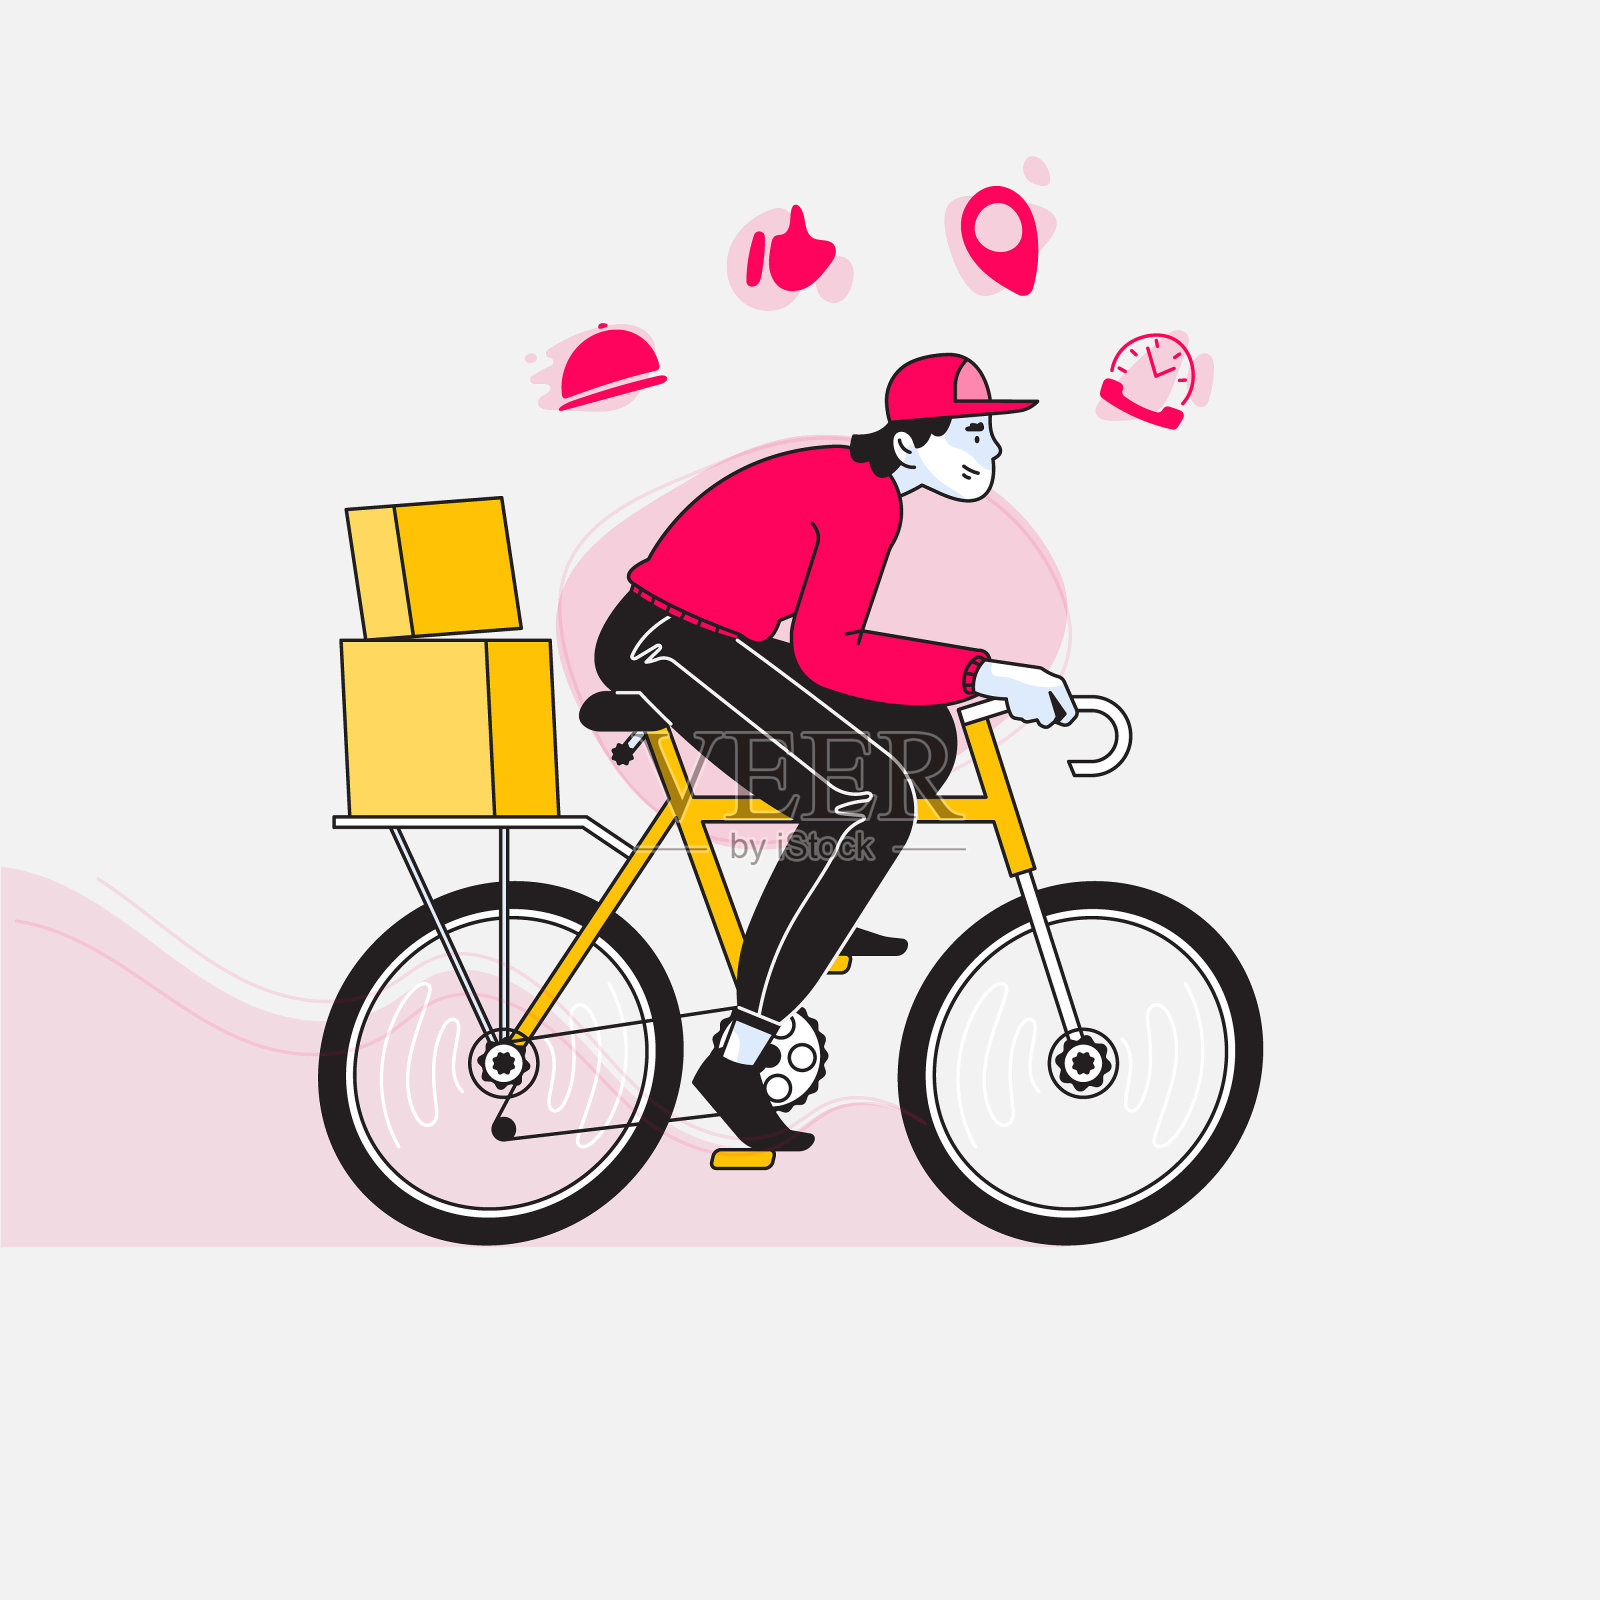 快递，快乐的快递员或男孩骑着自行车或自行车及时将包裹送到目的地，快递服务图标上方是矢量图插画图片素材